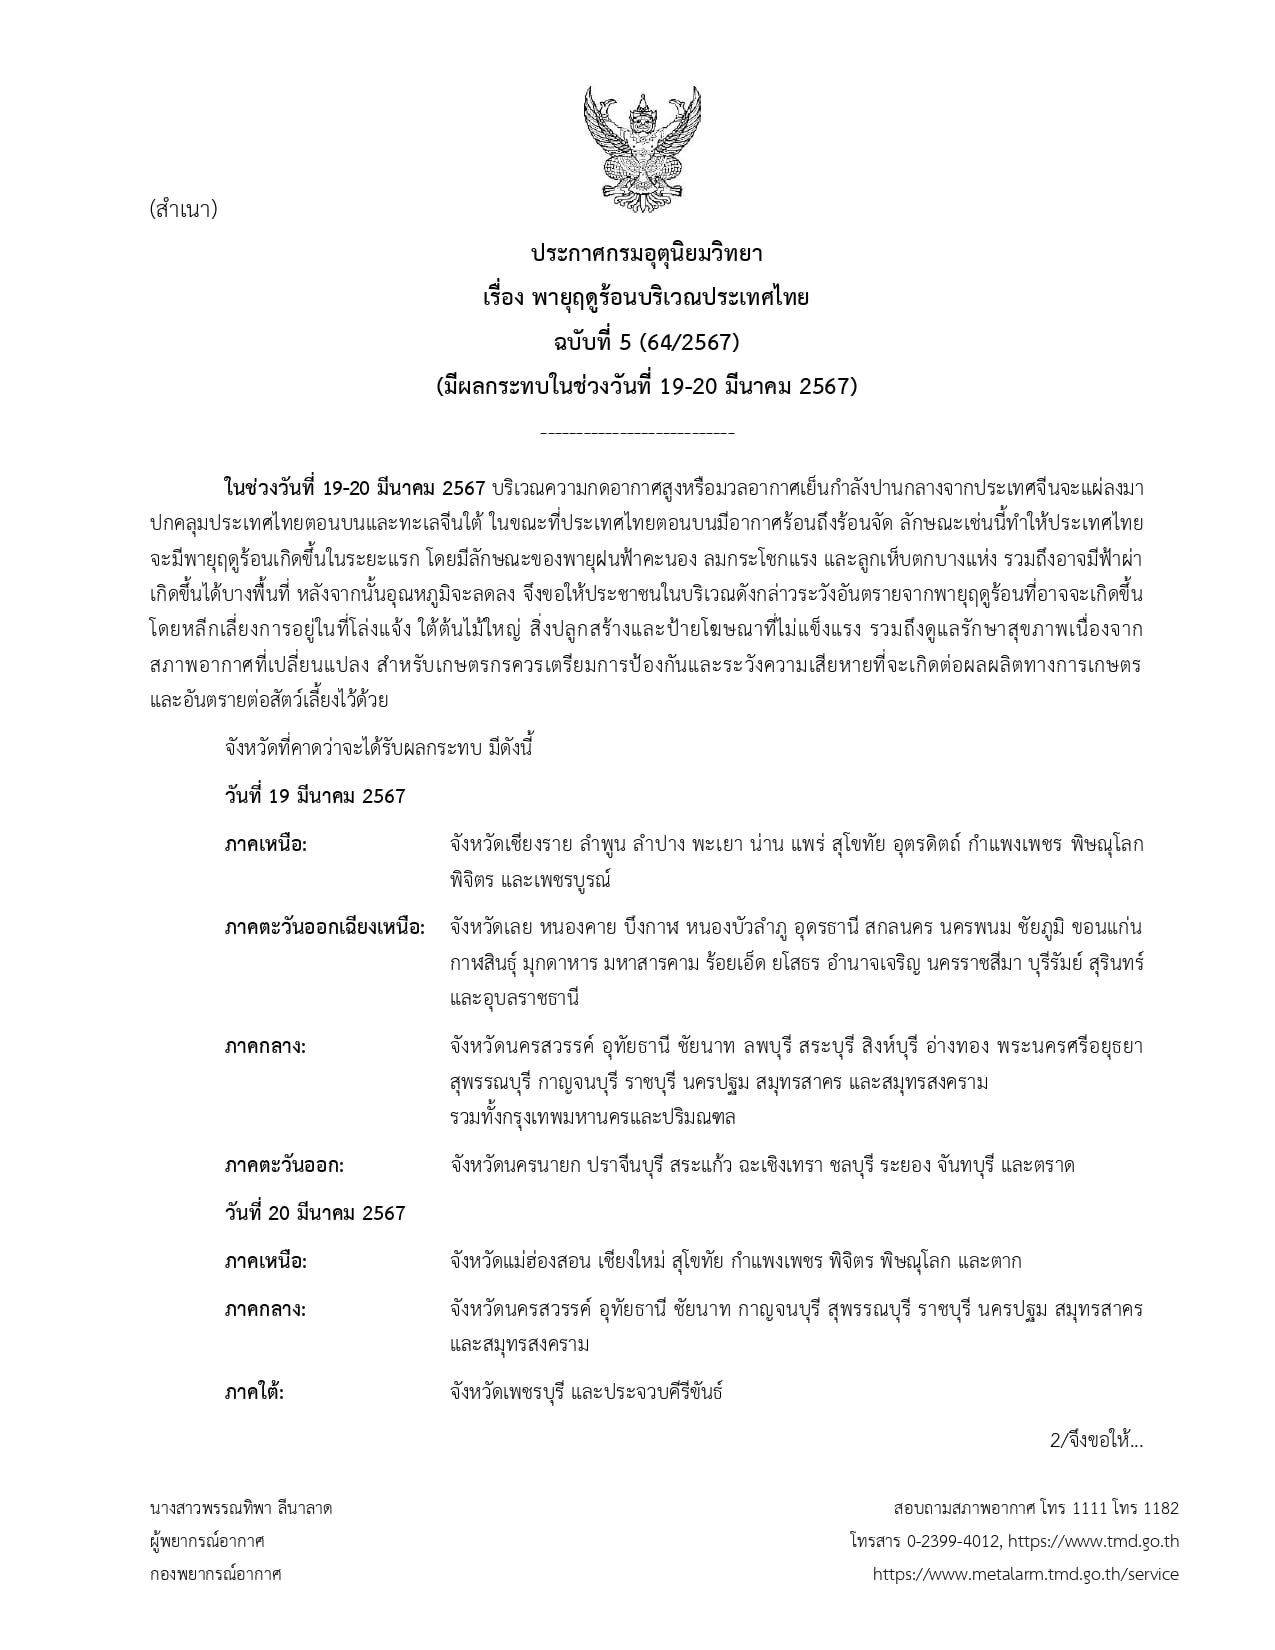 ประกาศกรมอุตุนิยมวิทยา เรื่อง พายุฤดูร้อนบริเวณประเทศไทย ฉบับที่ 5 (64/2567) (มีผลกระทบในช่วงวันที่ 19-20 มีนาคม 2567).